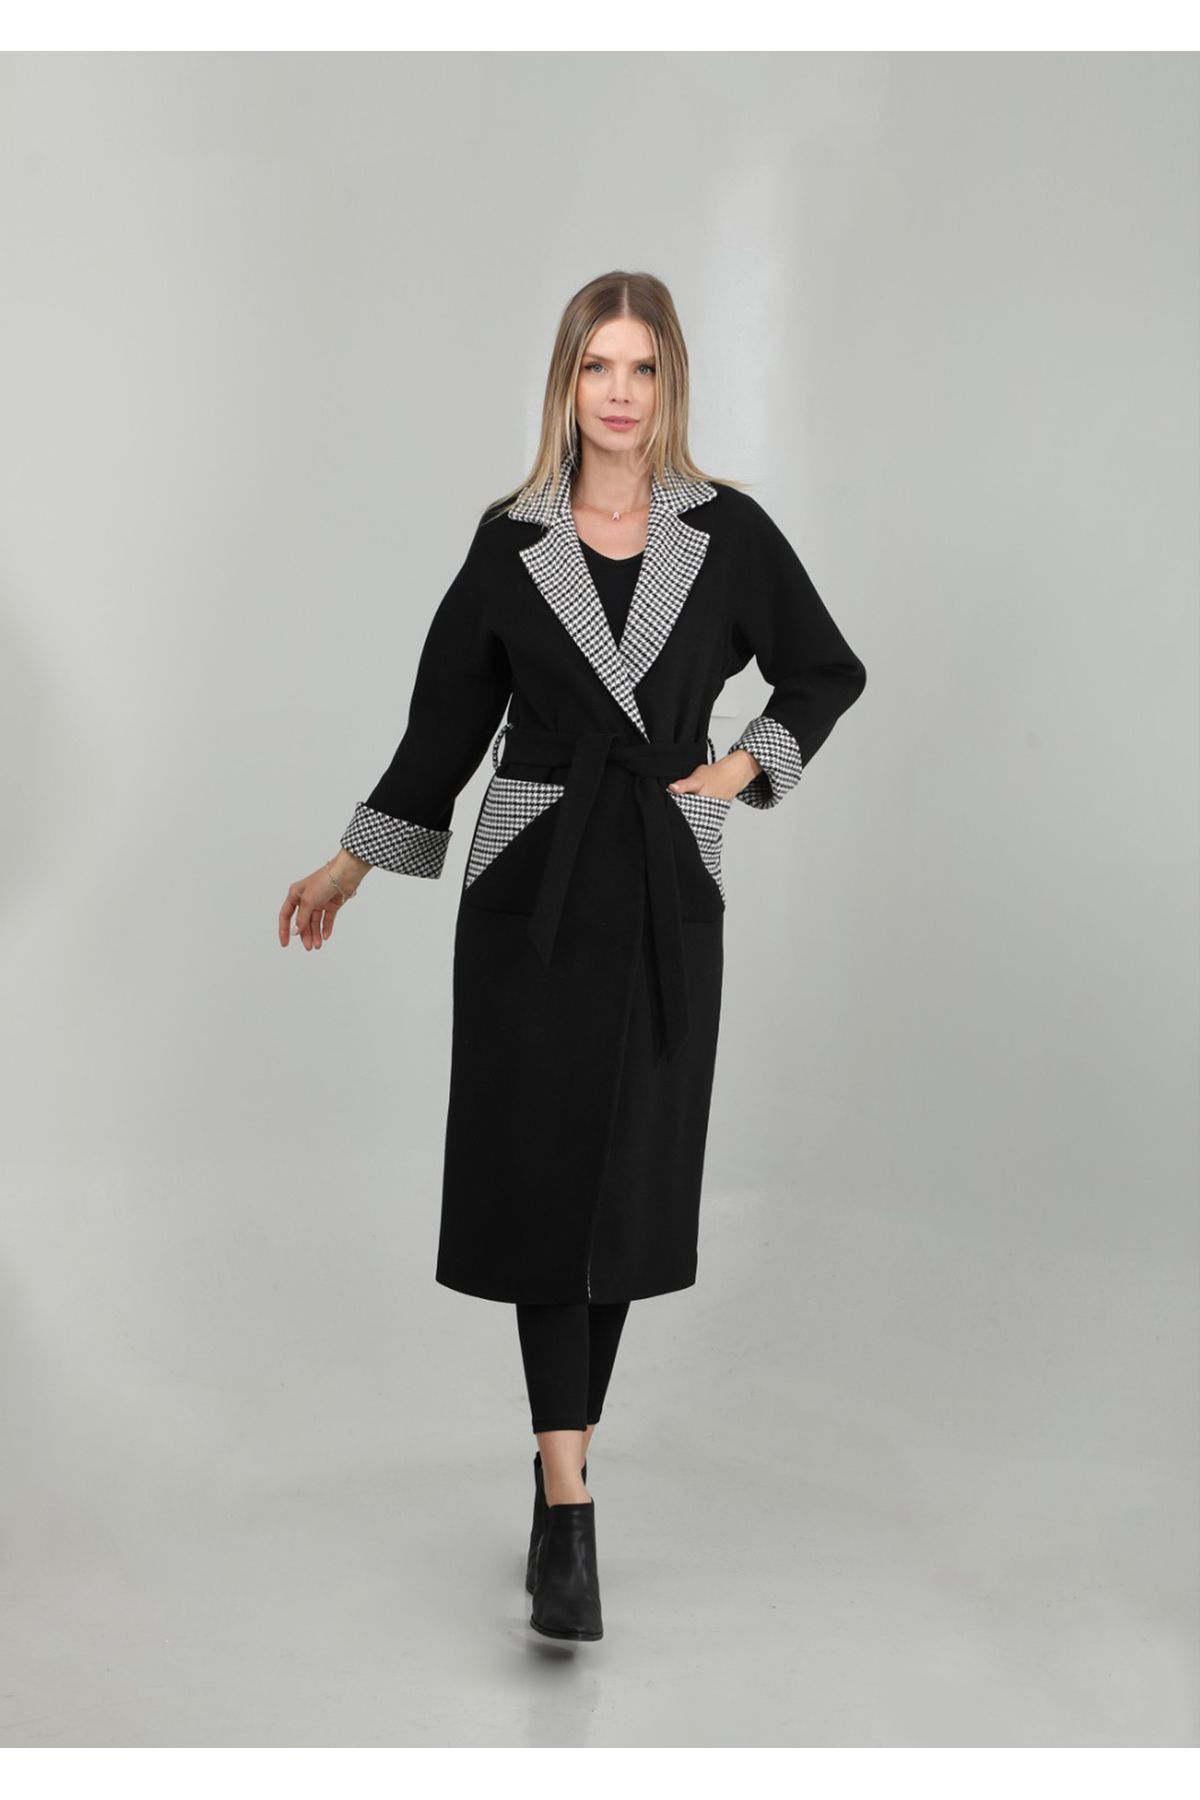 DOLCEBELLA Kadın Siyah Ceket Yakalı Bornoz Model Kuşaklı Kaşe Kaban